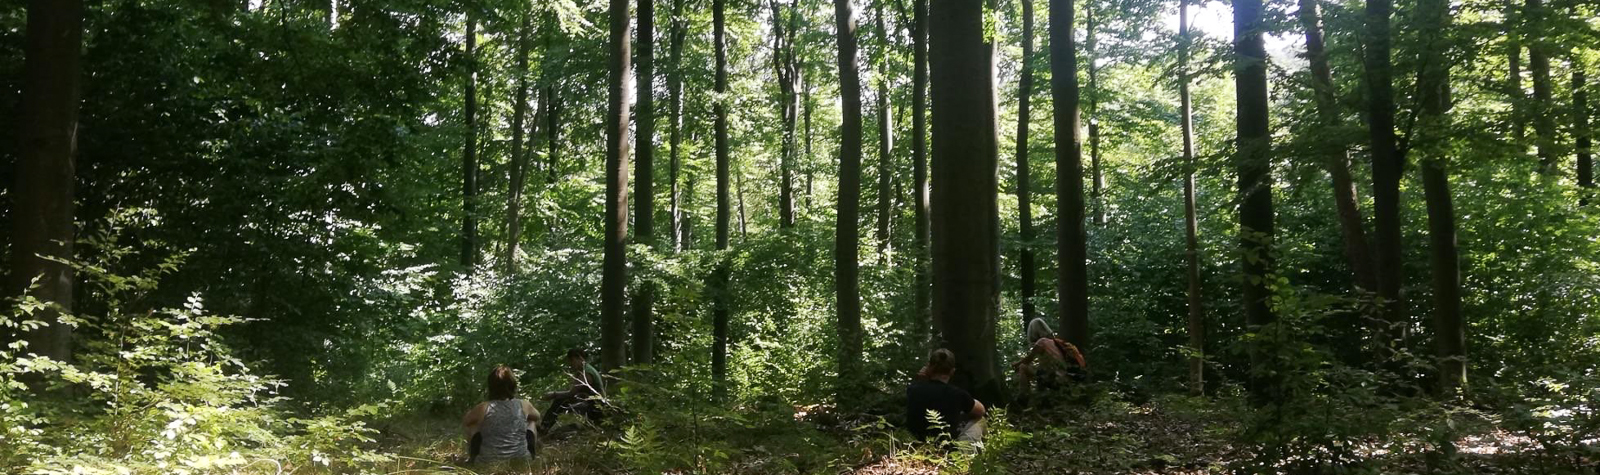 Menschen im Wald - Waldlauschen, Naturkunst und Entspannung